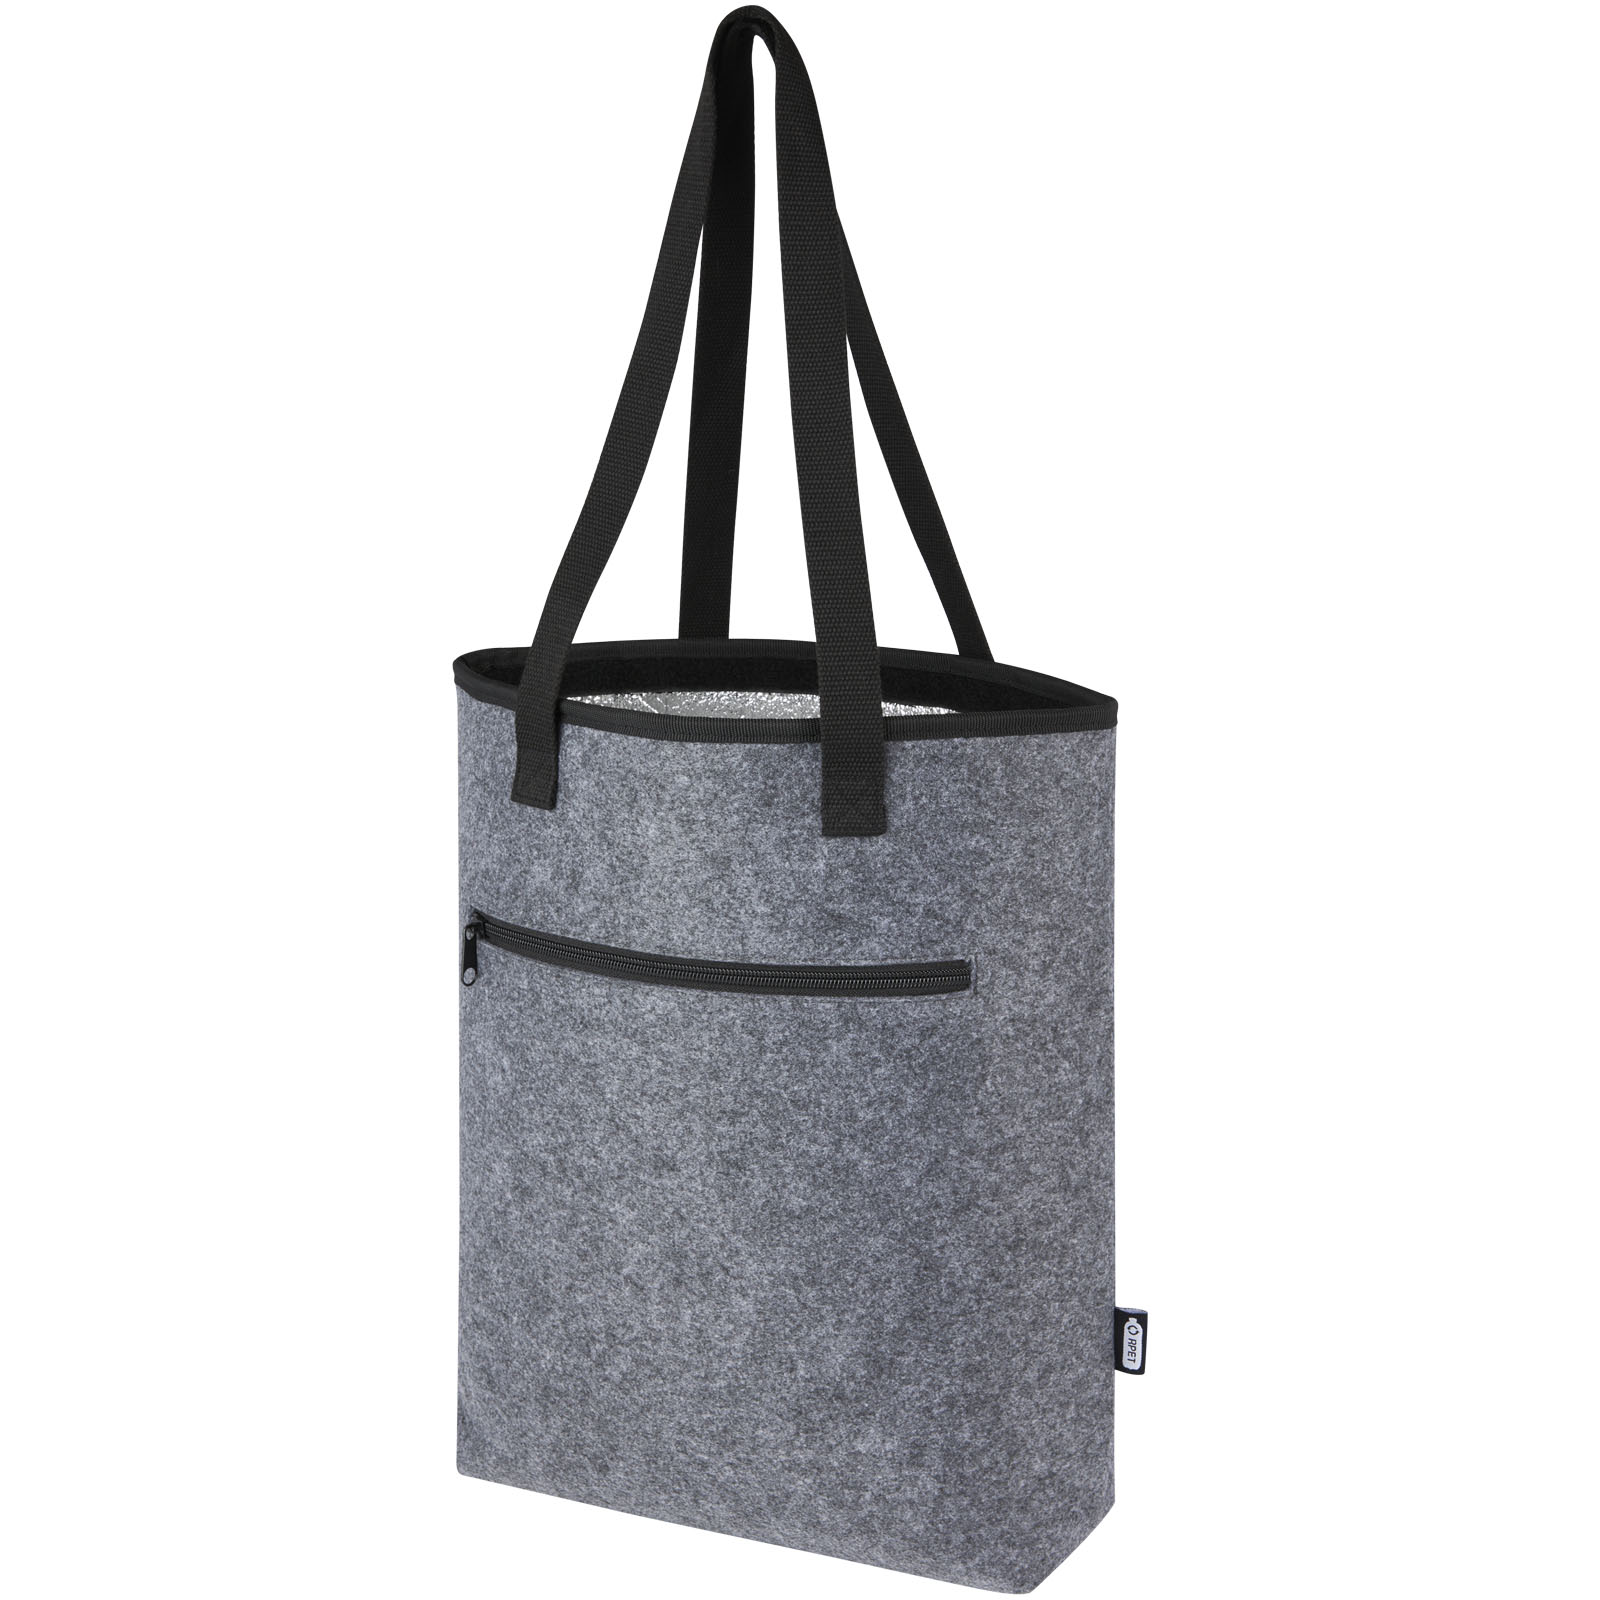 Bags - Felta GRS recycled felt cooler tote bag 12L